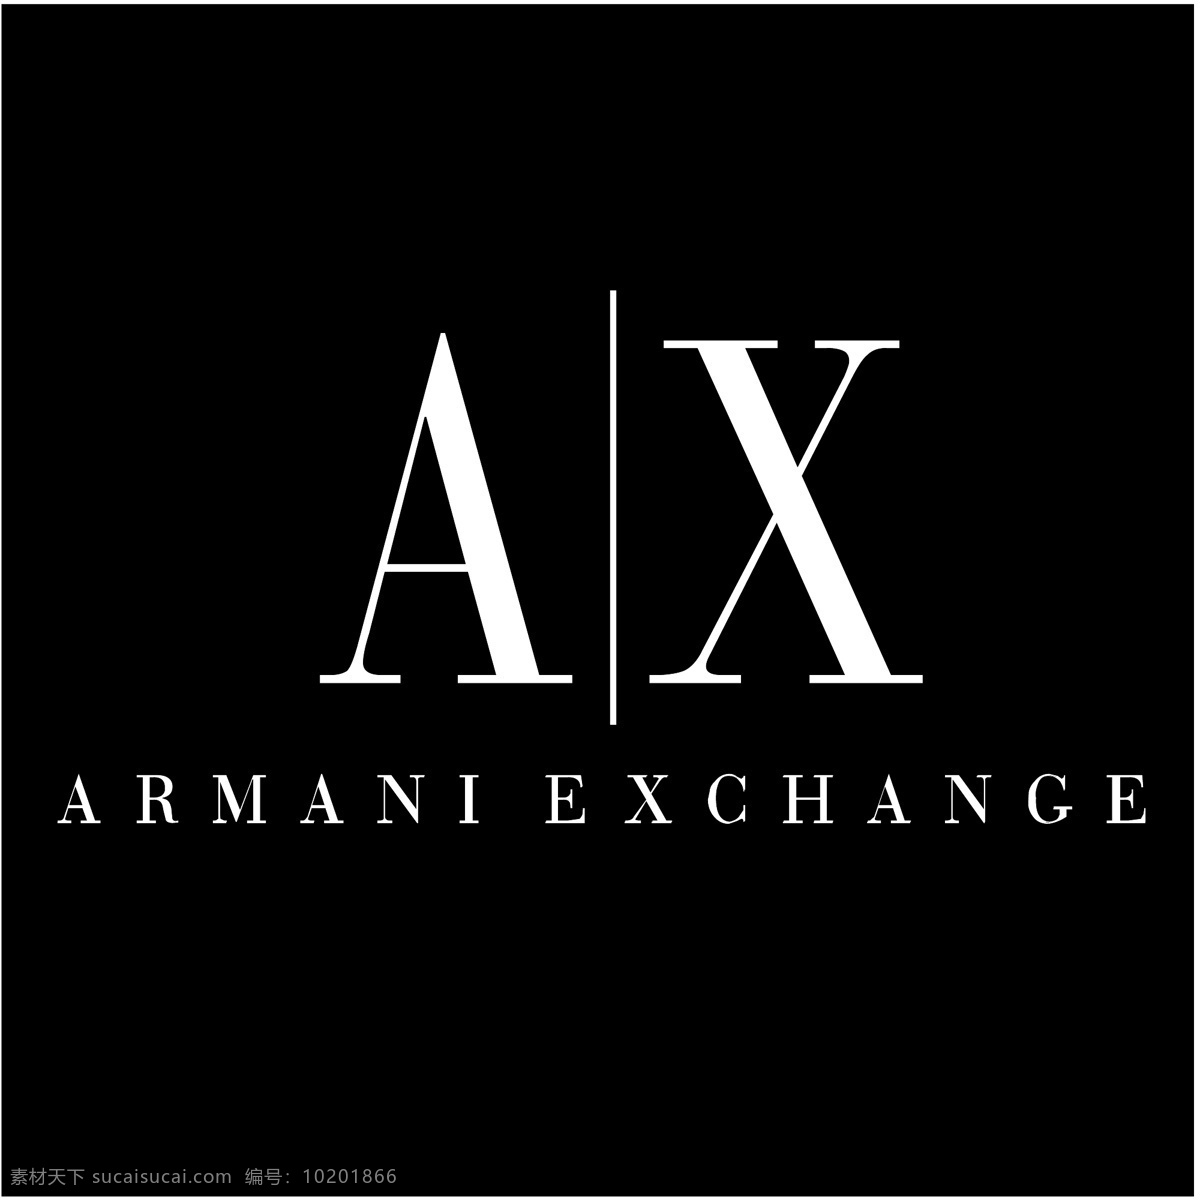 阿玛尼 exchange 矢量标志下载 免费矢量标识 商标 品牌标识 标识 矢量 免费 品牌 公司 灰色